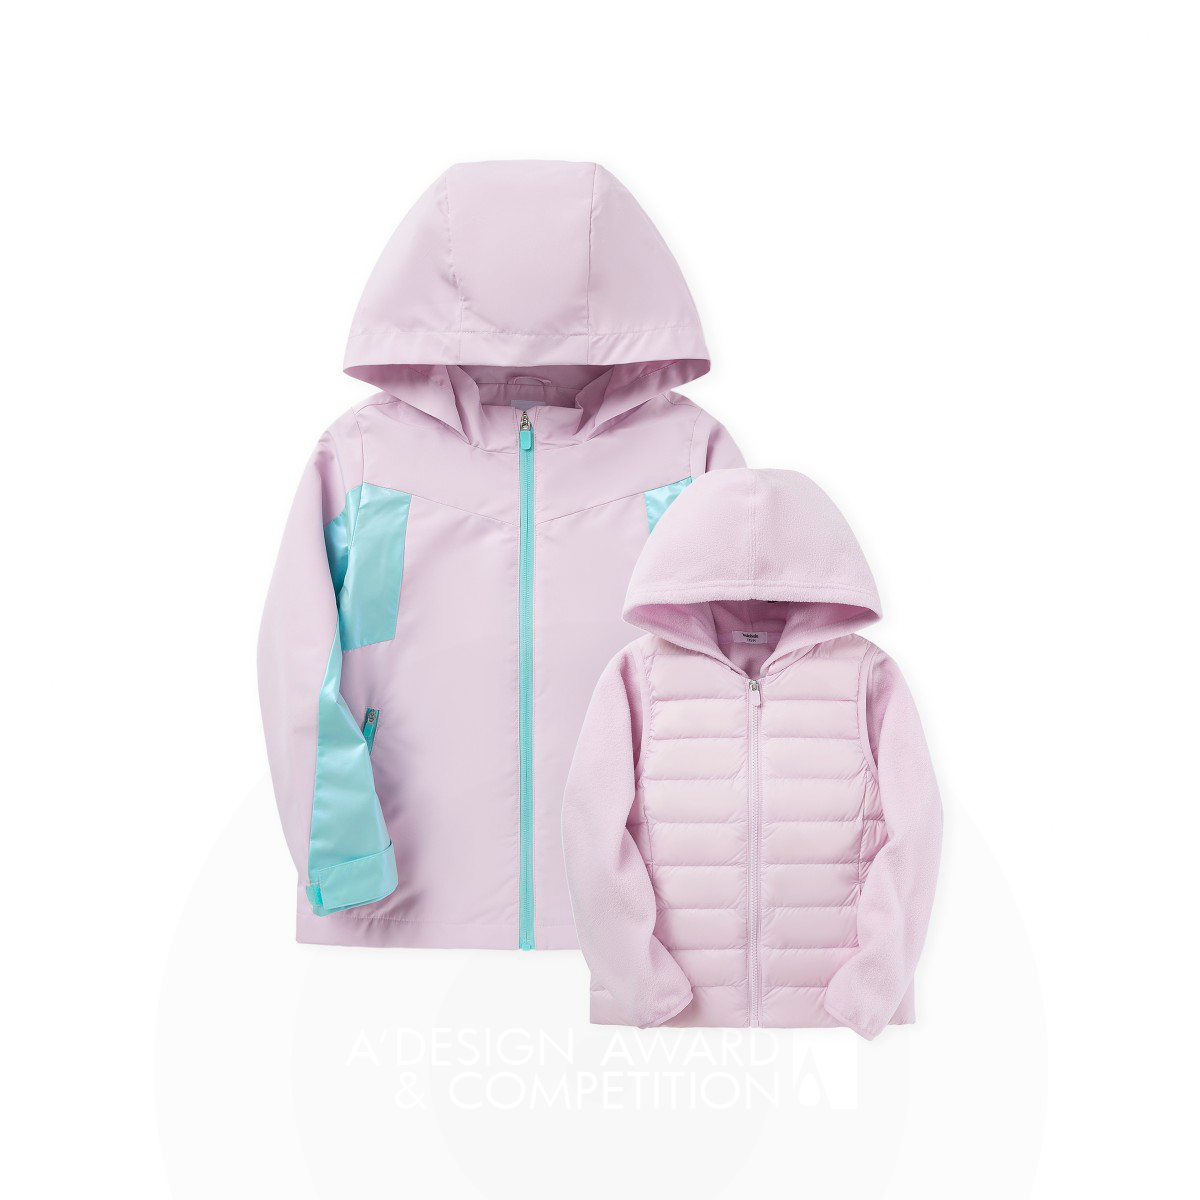 다기능성을 갖춘 어린이용 다운 재킷: 환경을 생각하는 패션의 새로운 기준